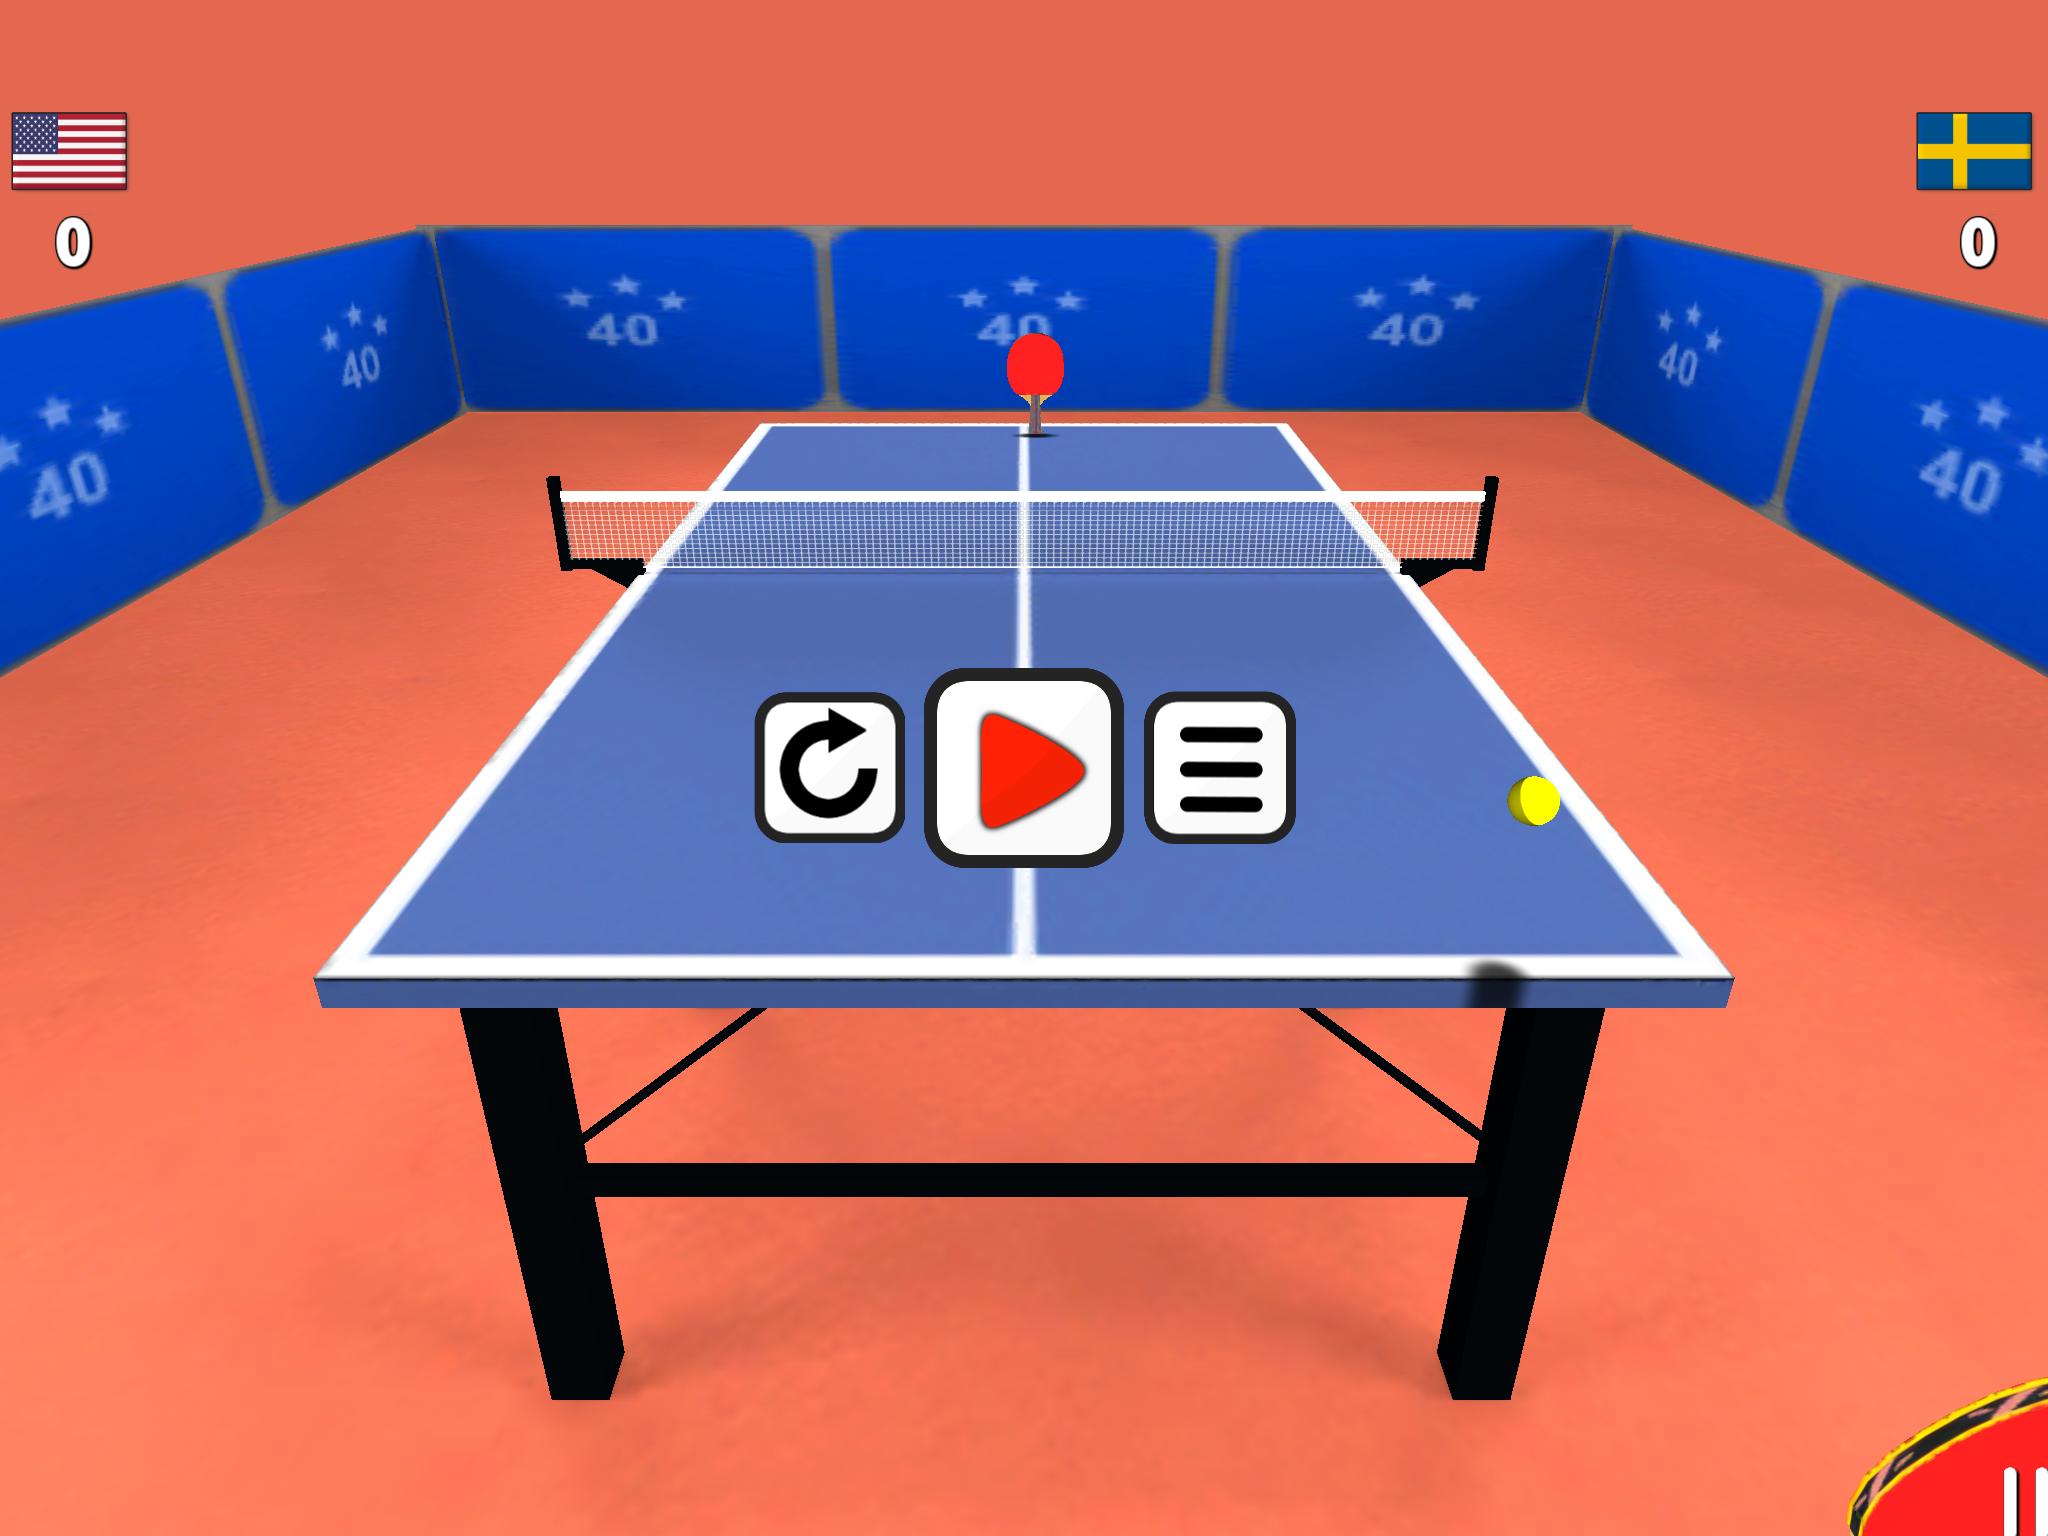 Пинг игры андроид. 3d настольный теннис. Пинг понг игра. Пинг понг для андроид. 3d пинг понг корт.